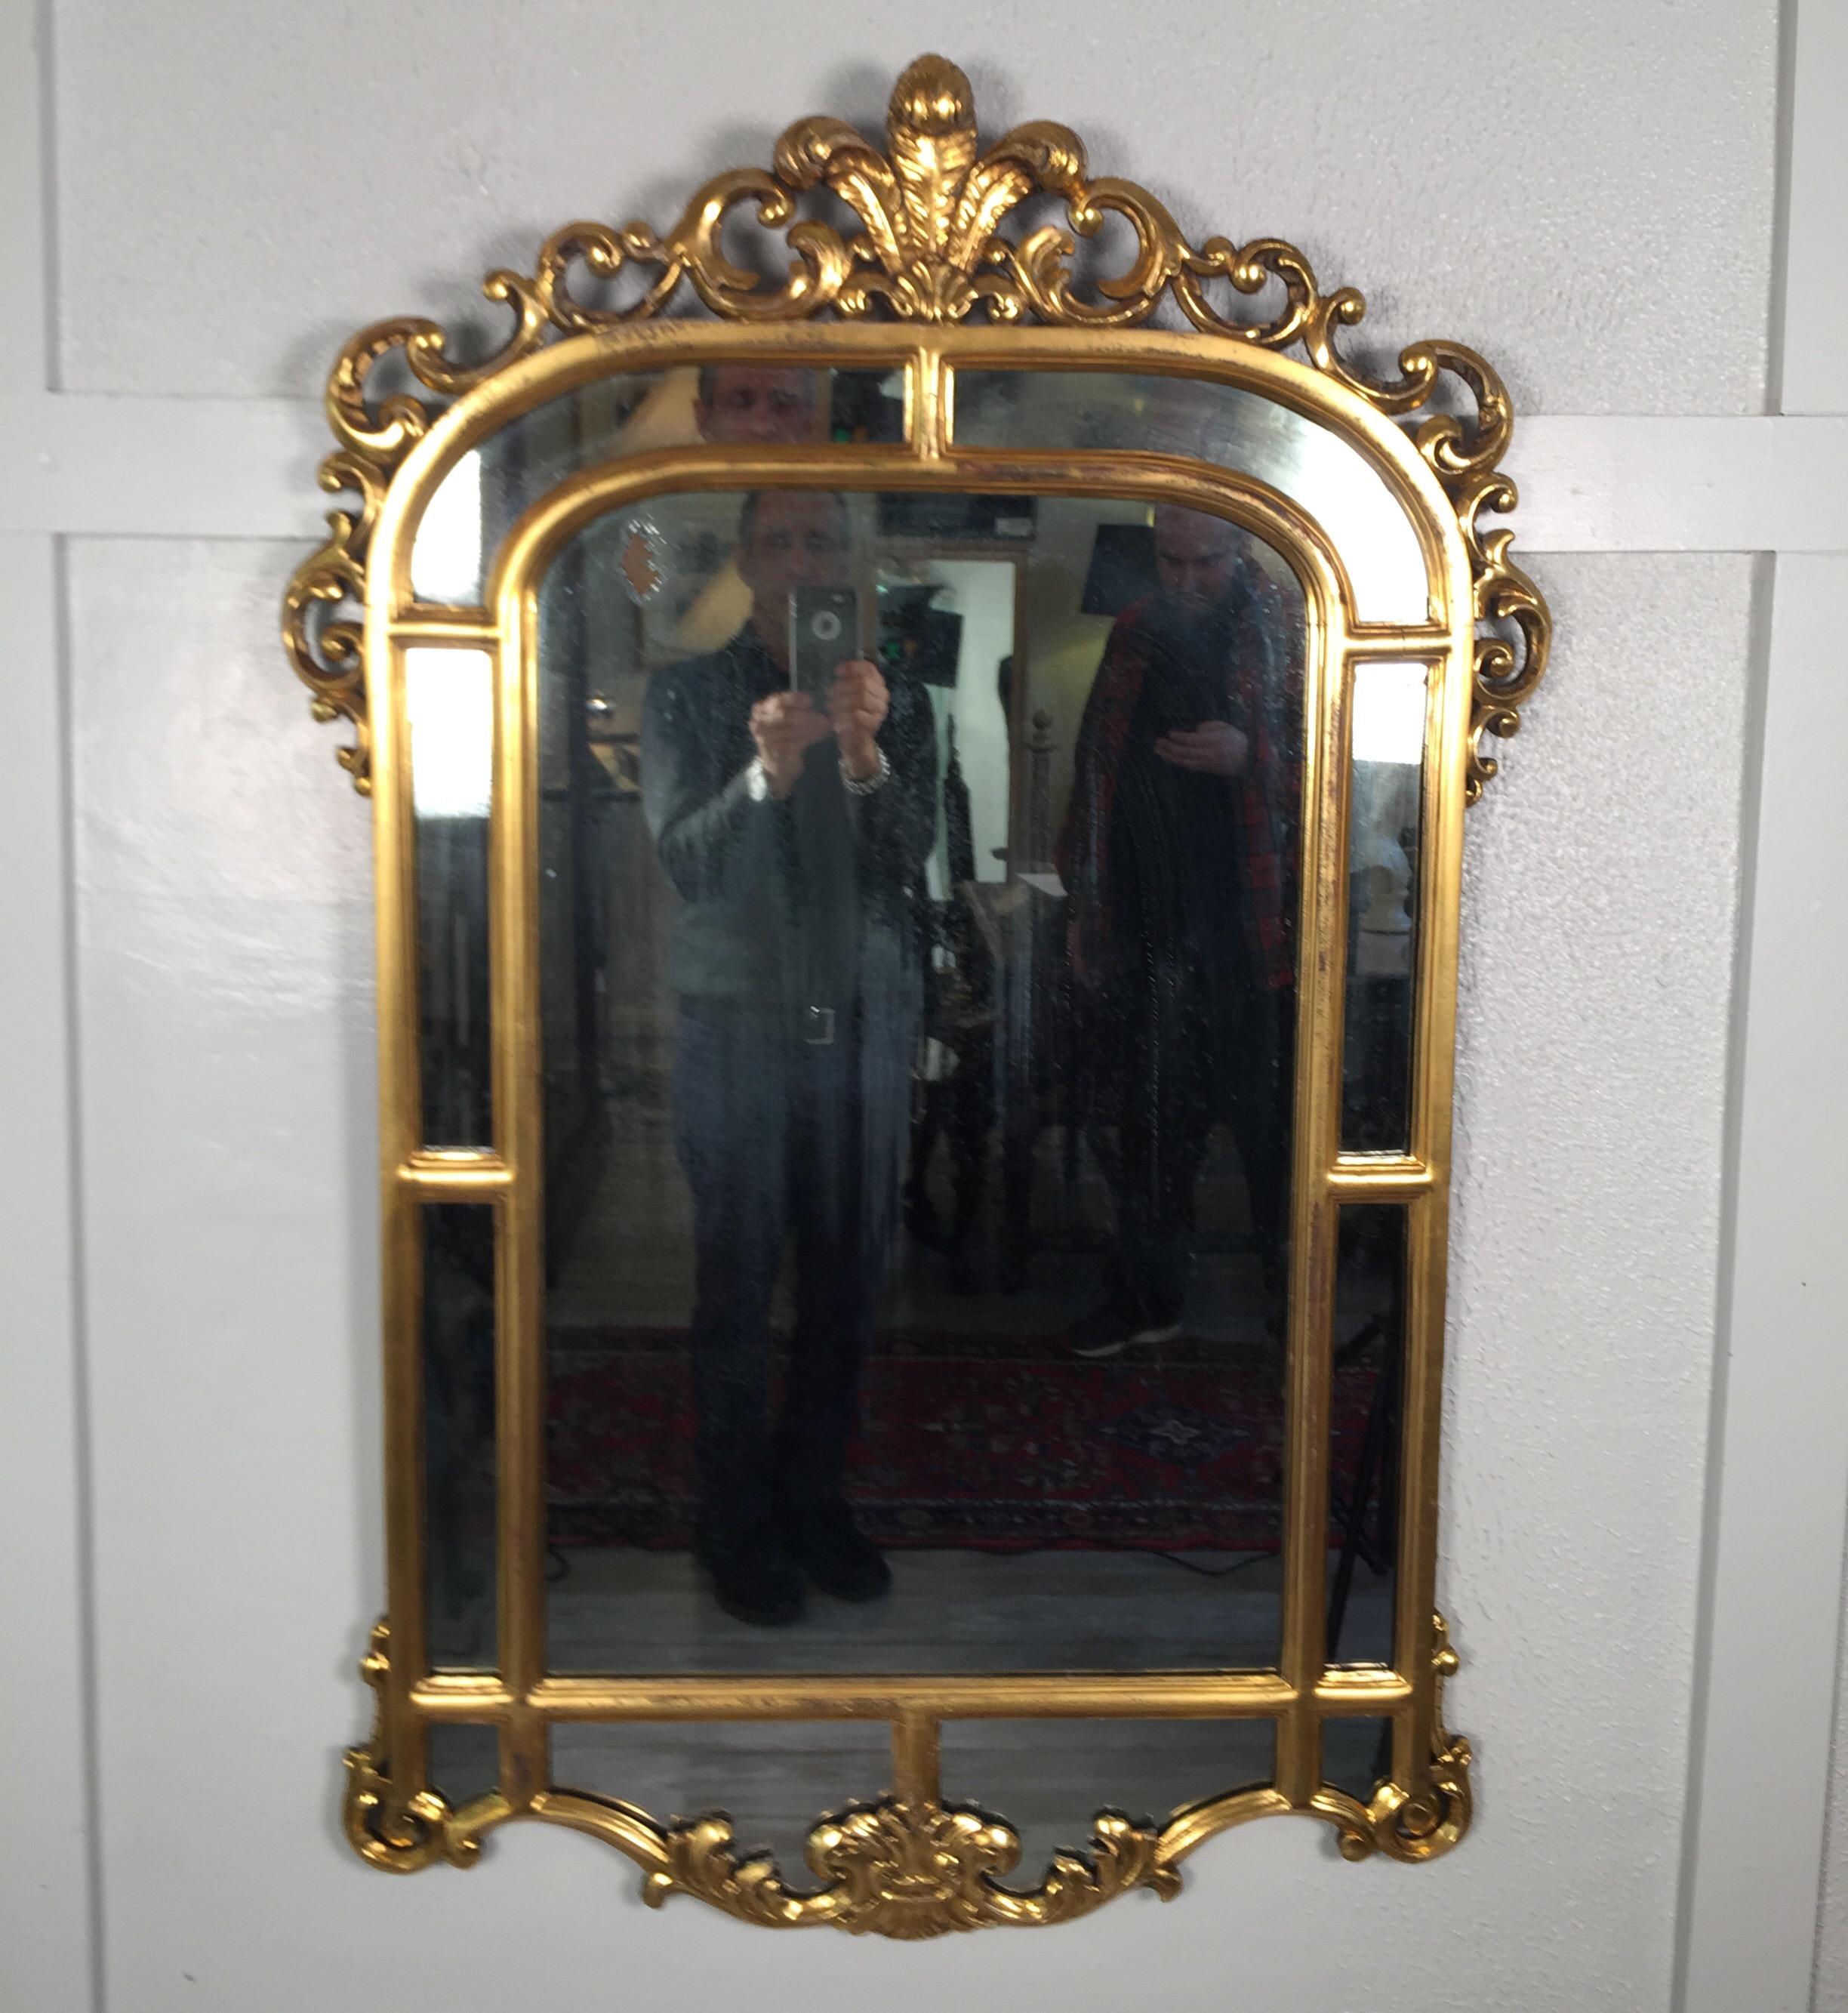 Miroir en or doré de style français dans son état d'origine, le miroir a des pertes appropriées à l'âge de l'argent. Beau miroir doré en état original pour les puristes, vers les années 1890.
Dimensions : 33